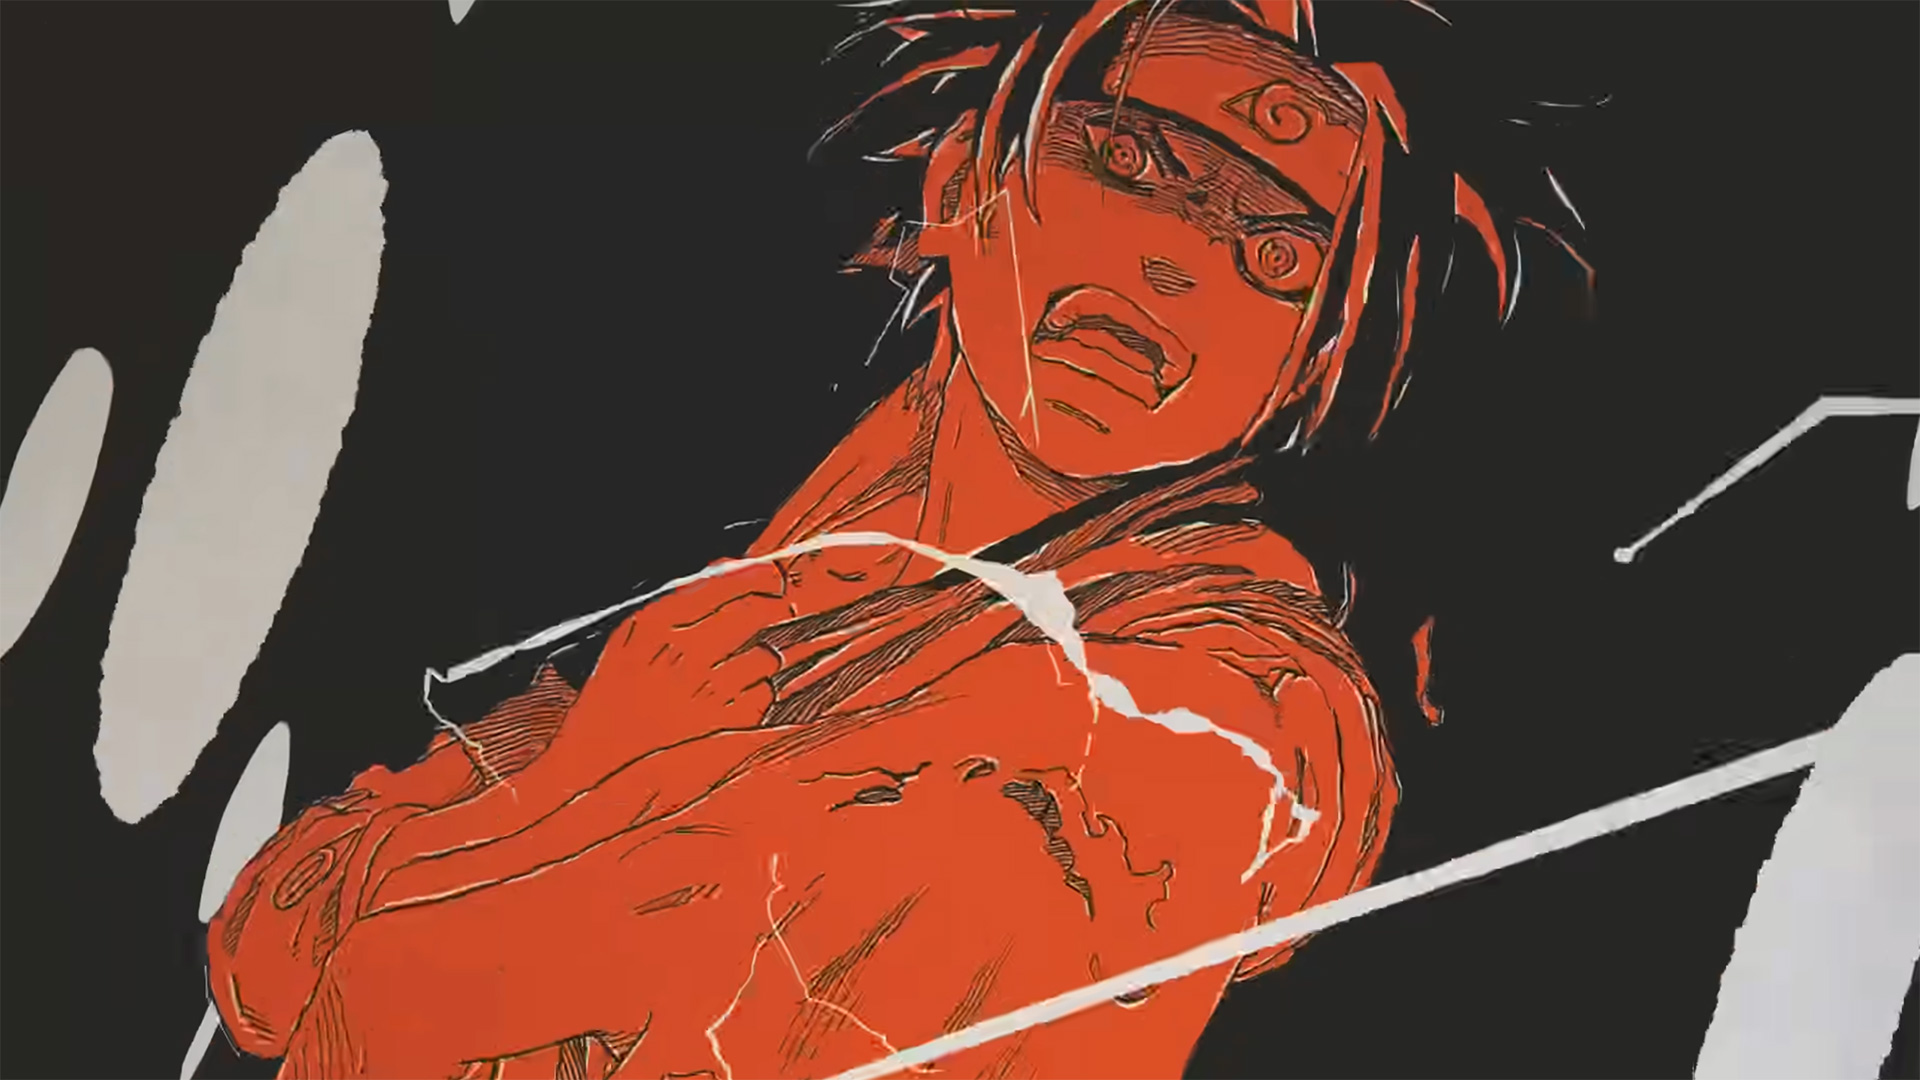 Naruto' ganha vídeo comemorativo dos 20 anos do animê